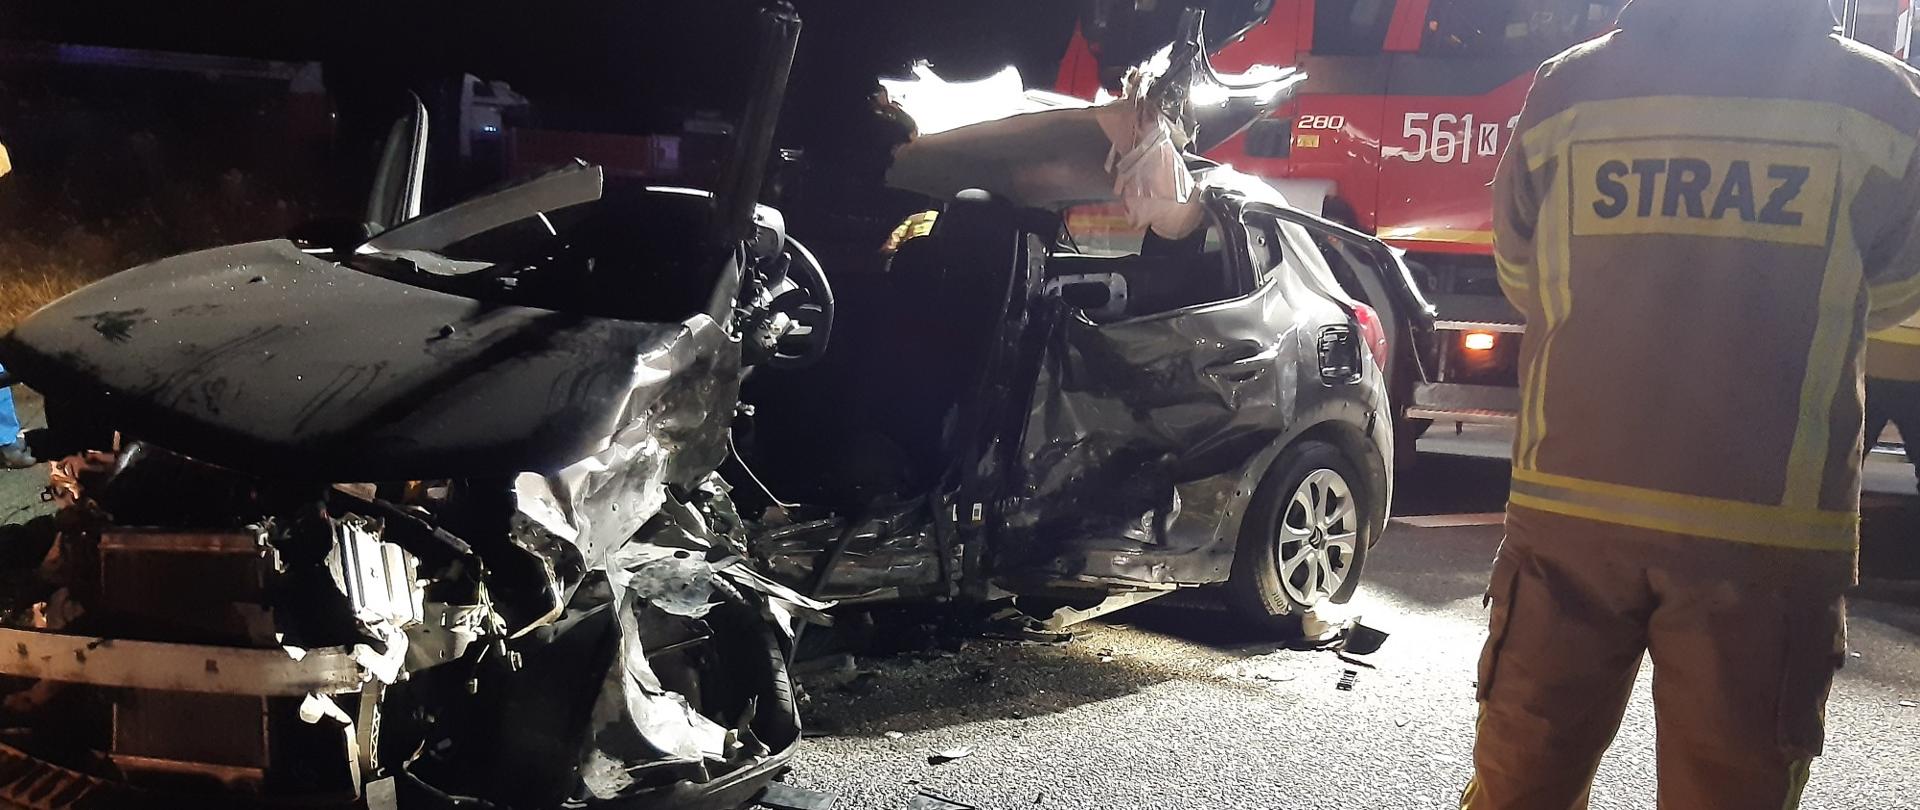 Na zdjęciu samochód osobowy całkowicie zniszczony. Z prawej strony strażak. W dalszej części widoczny samochód ratowniczo - gaśniczy.